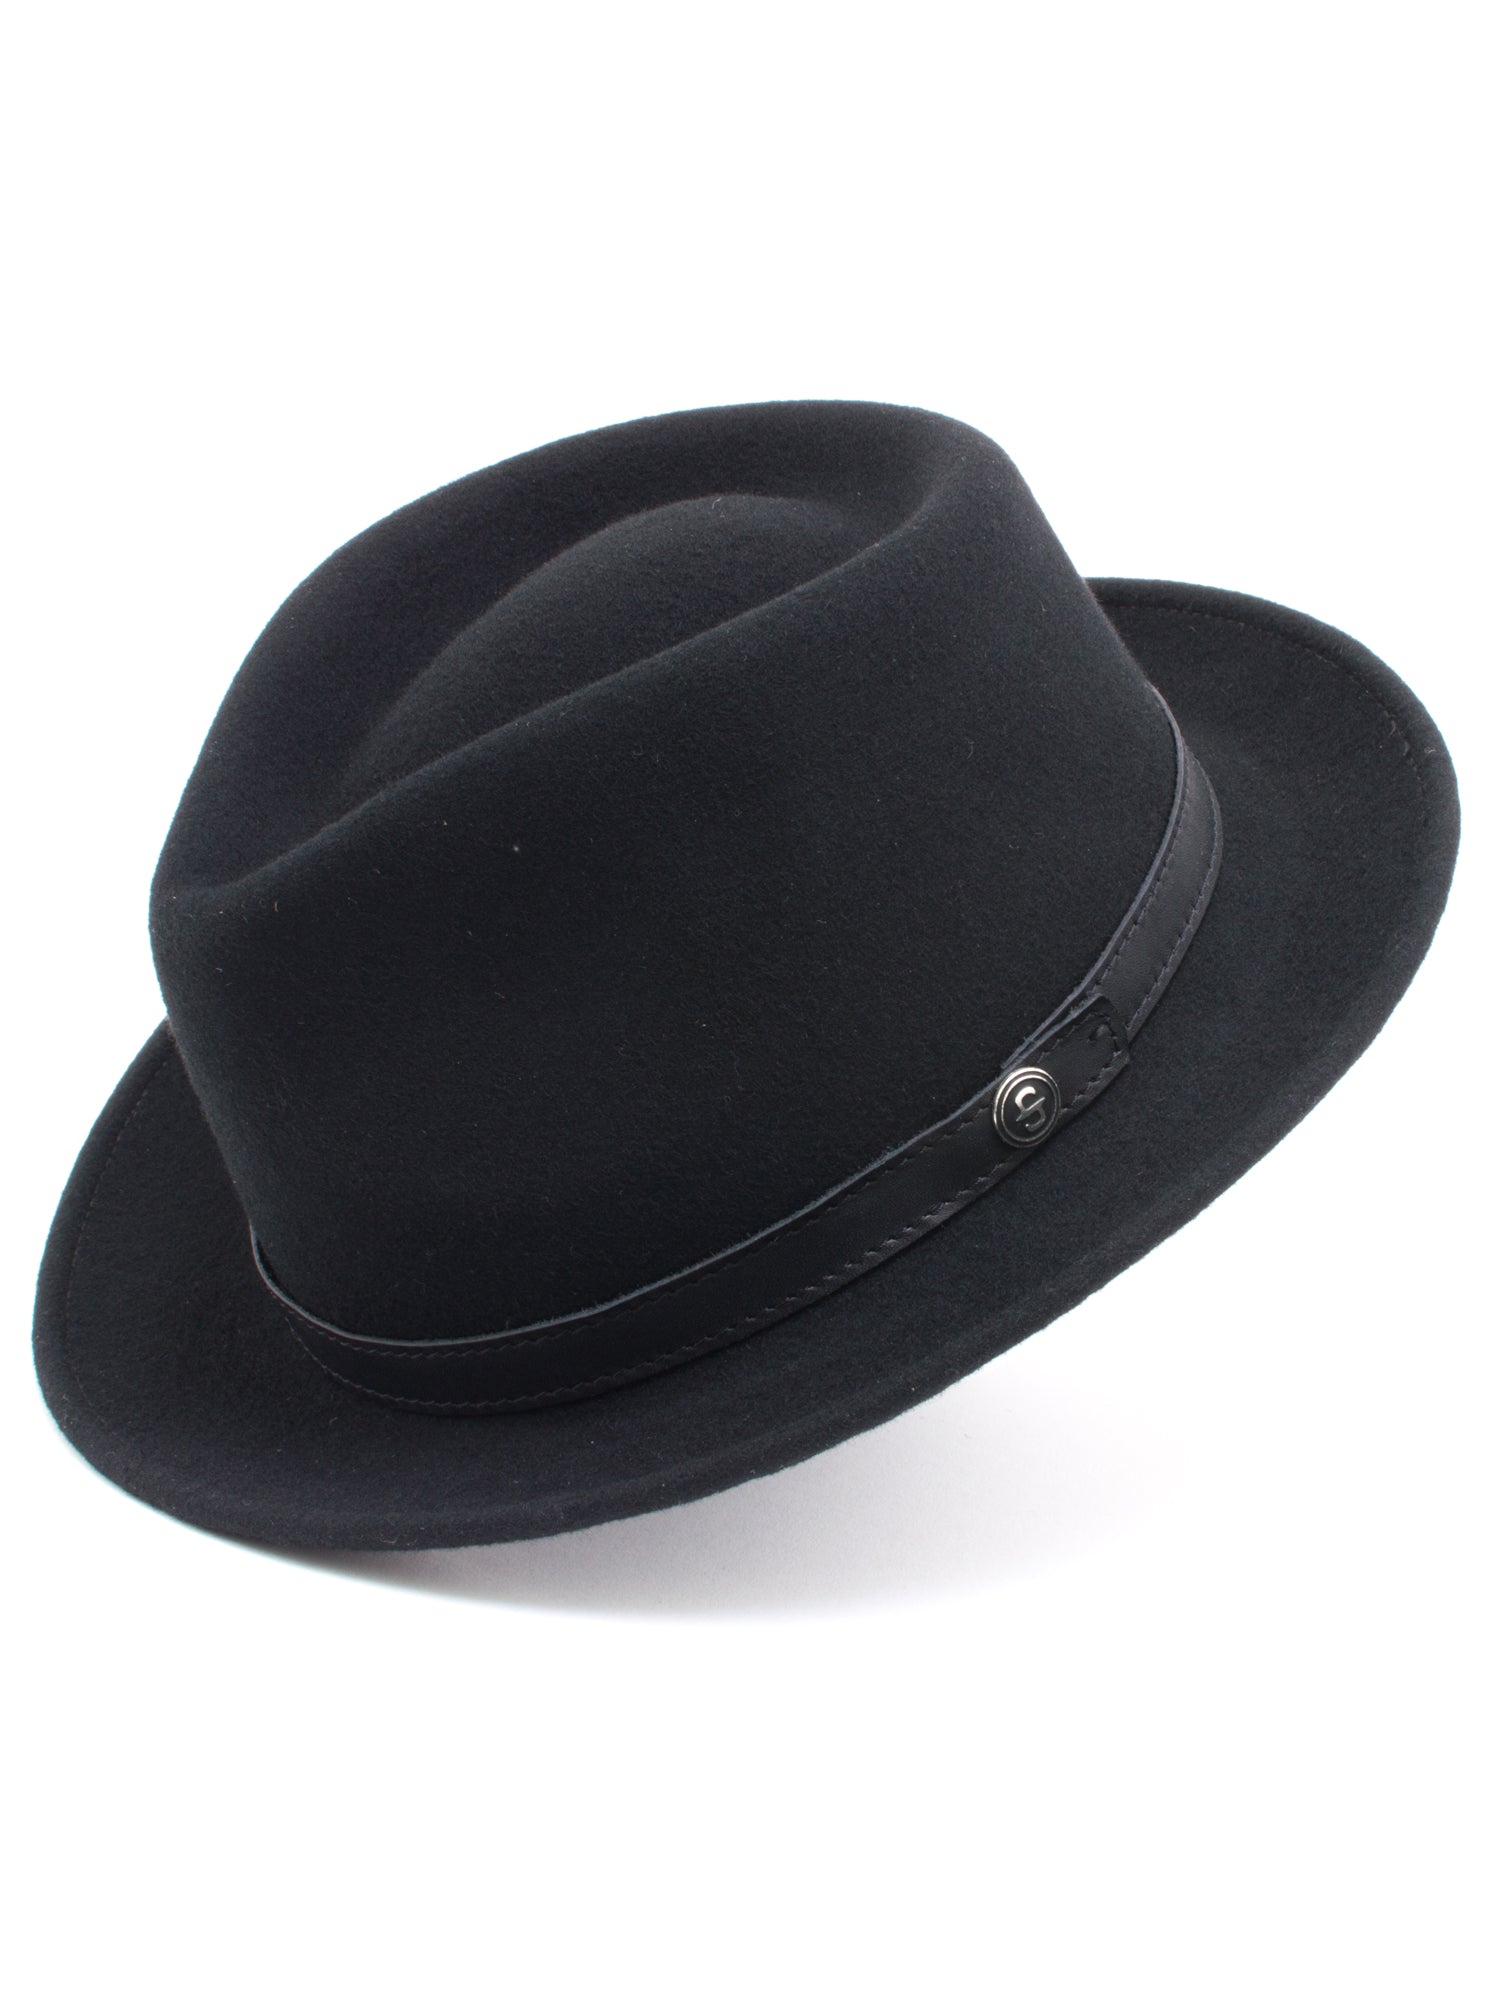 Stetson 100% Wool Felt Prof Hats in Black